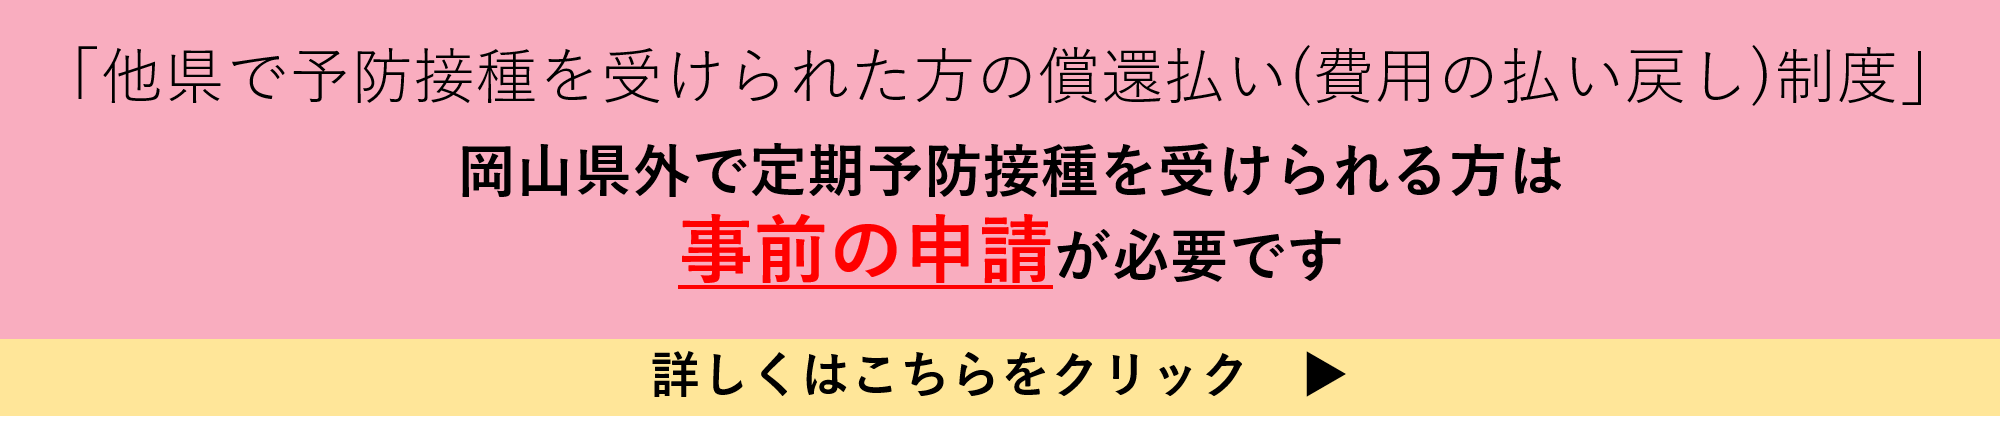 岡山県外で定期予防接種を受けられた方はこちらをクリックしてください